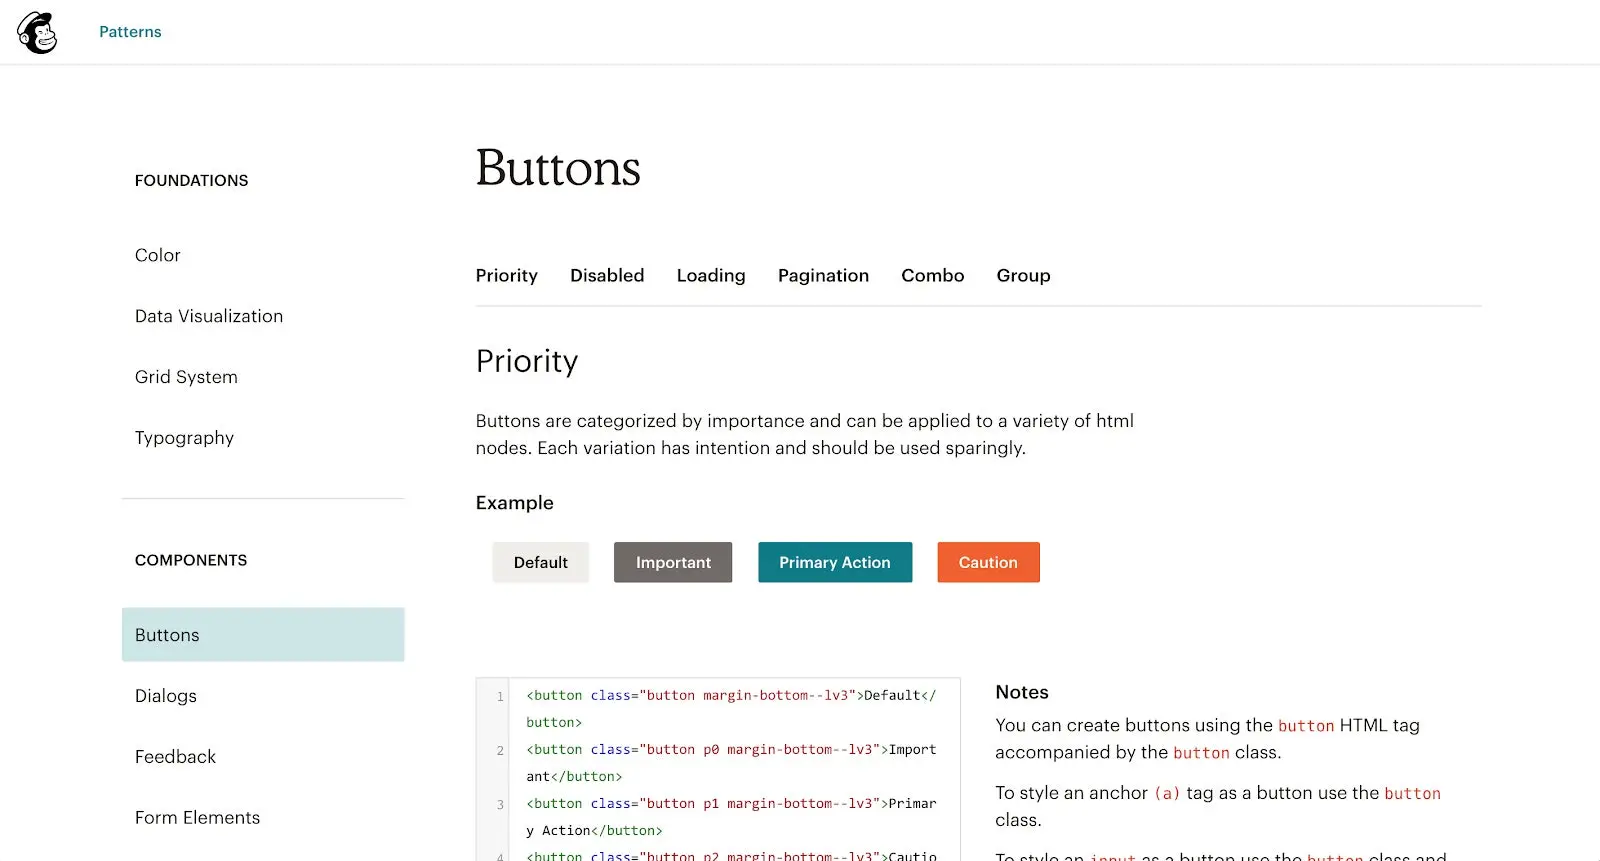 Mailchimpのデザインシステムの公開Webサイト。コードスニペットを含むデザインパターンが説明されている。